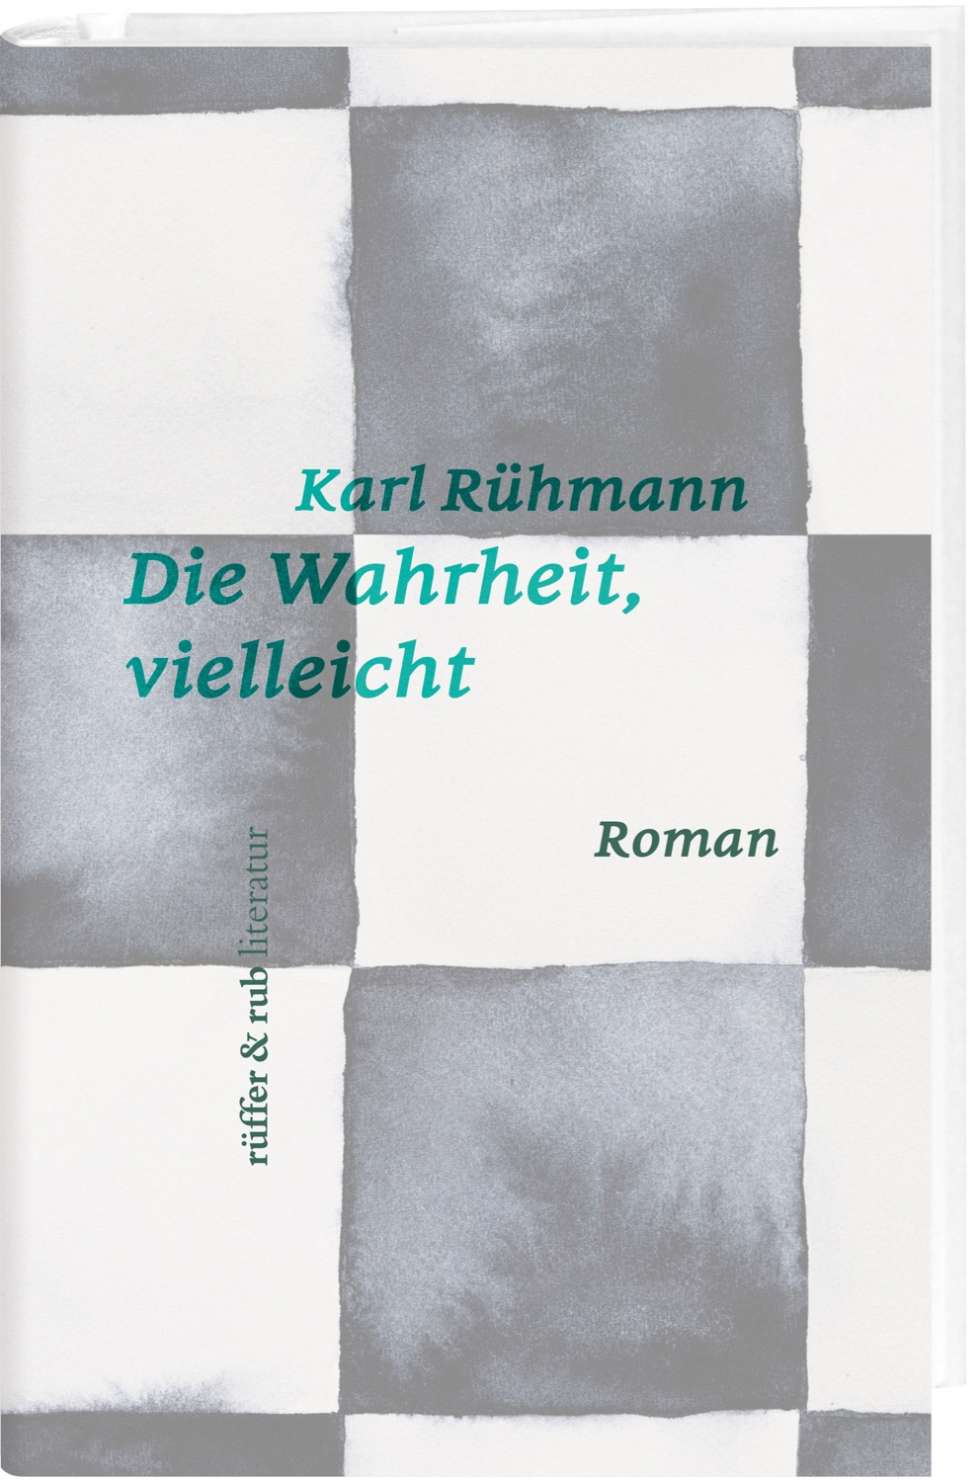 Der Autor Karl Rühmann im Gespräch über sein neues Buch «Die Wahrheit, vielleicht». 